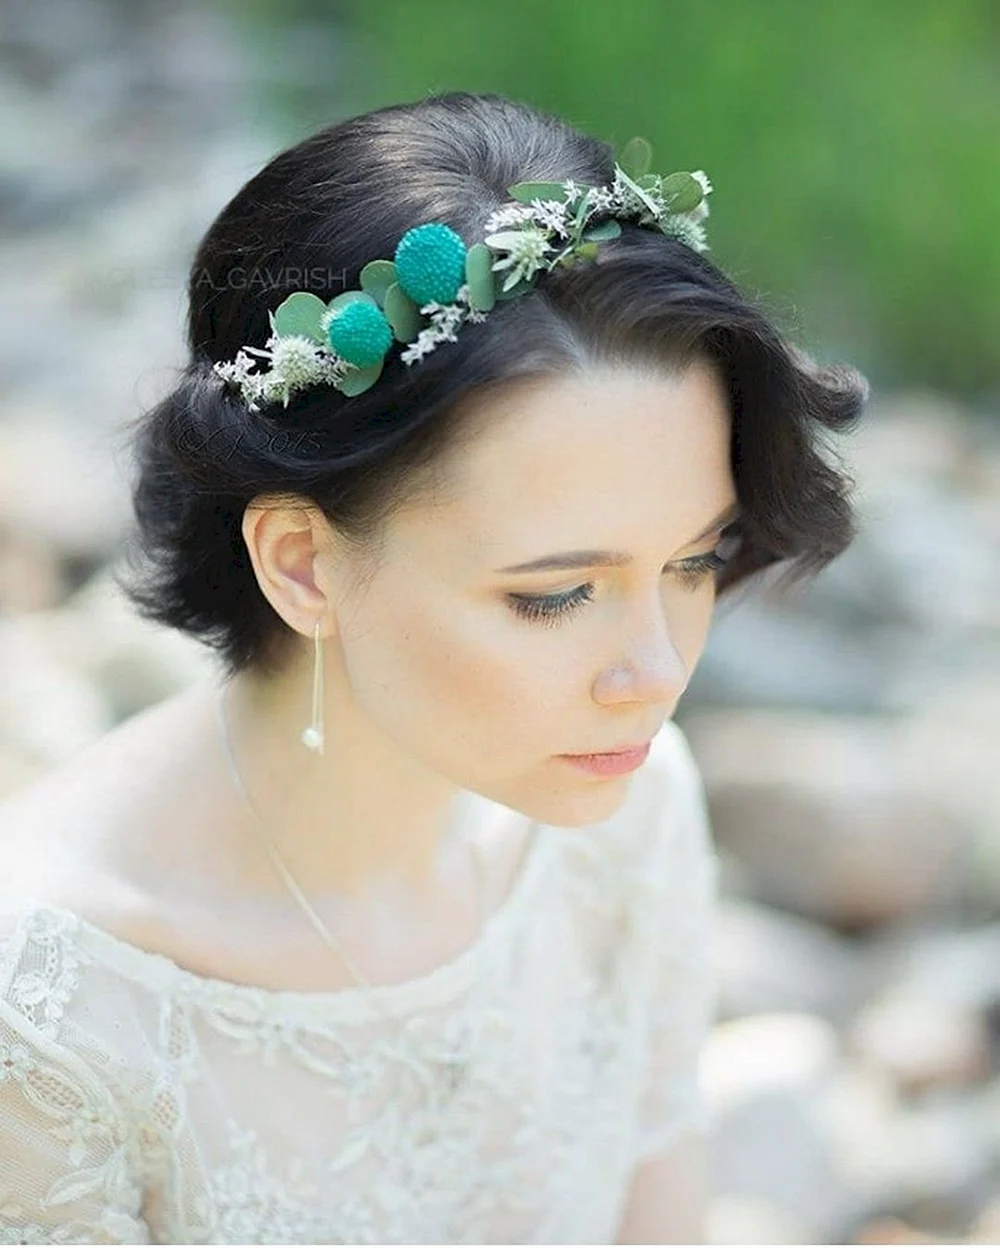 Необычные украшения на голову невесты бирюзового цвета